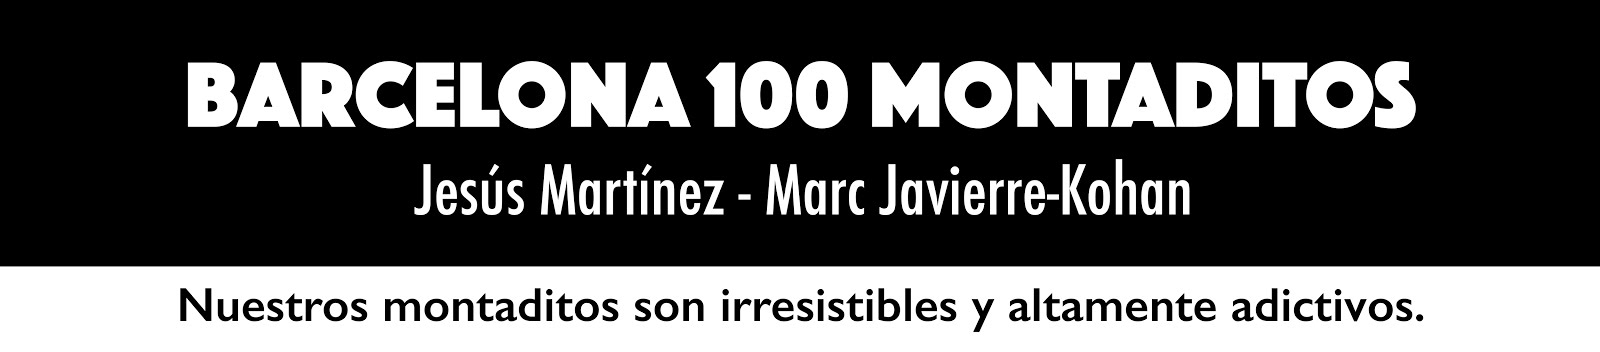 Barcelona 100 montaditos